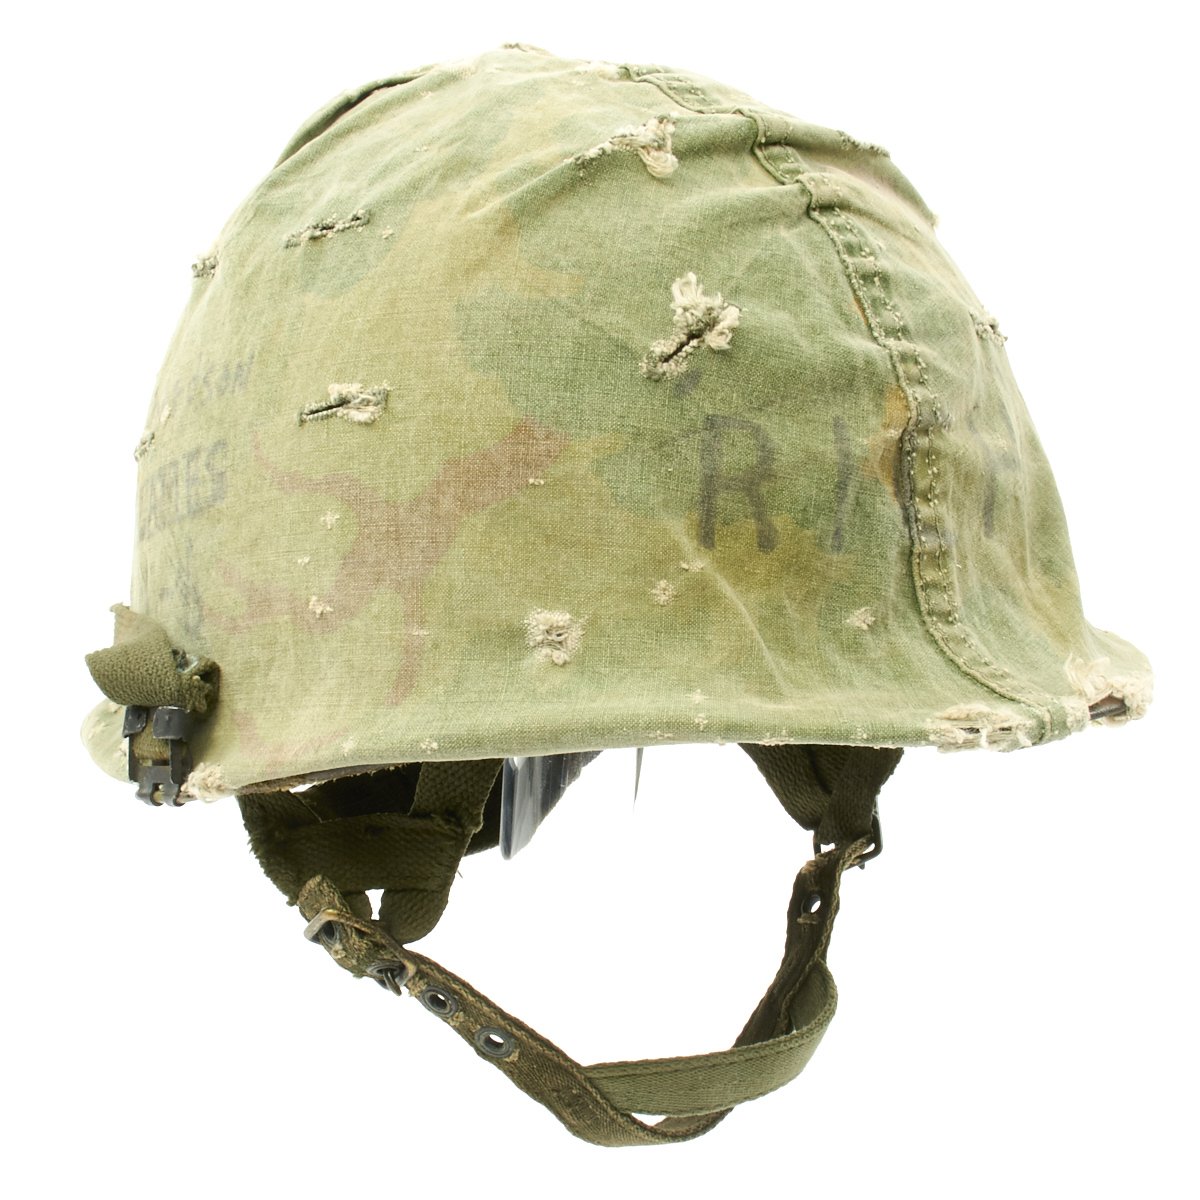 Original U.S. WWII Vietnam War M1 Paratrooper Helmet with USMC